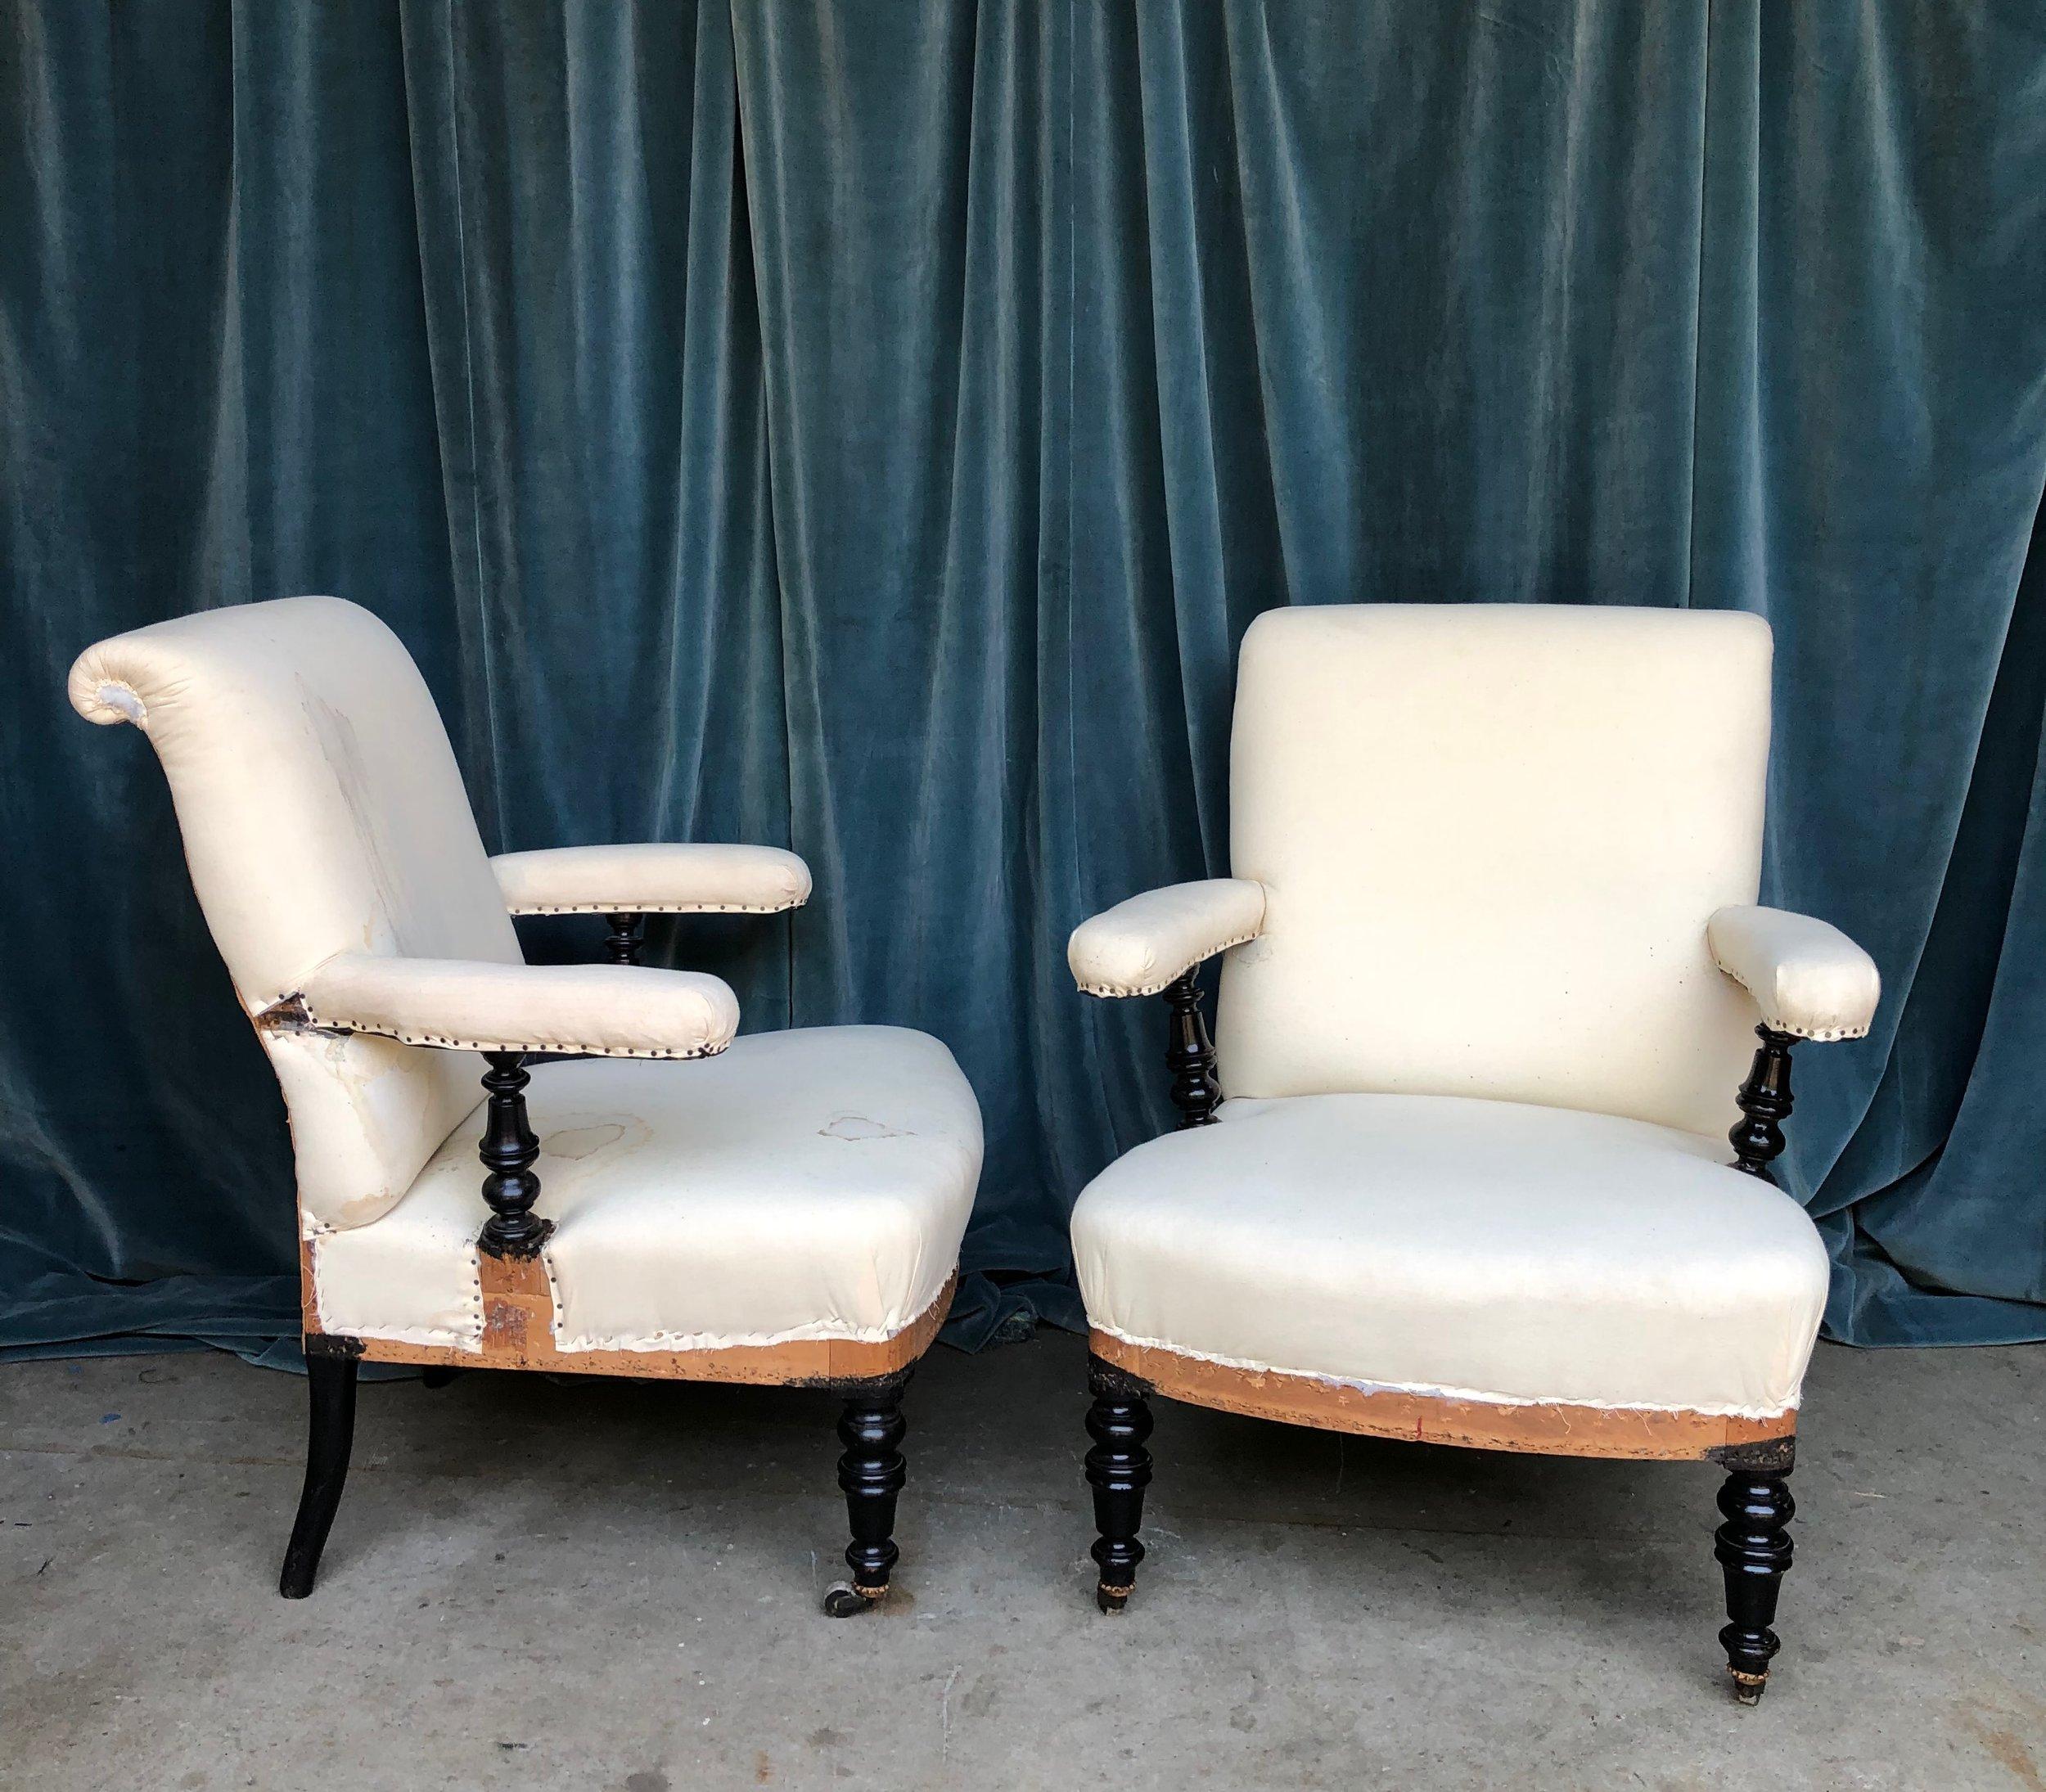 Dieses hübsche Paar französischer Napoleon-III-Sessel aus dem 19. Jahrhundert ist ein einzigartiges Unikat. Die Stühle haben 